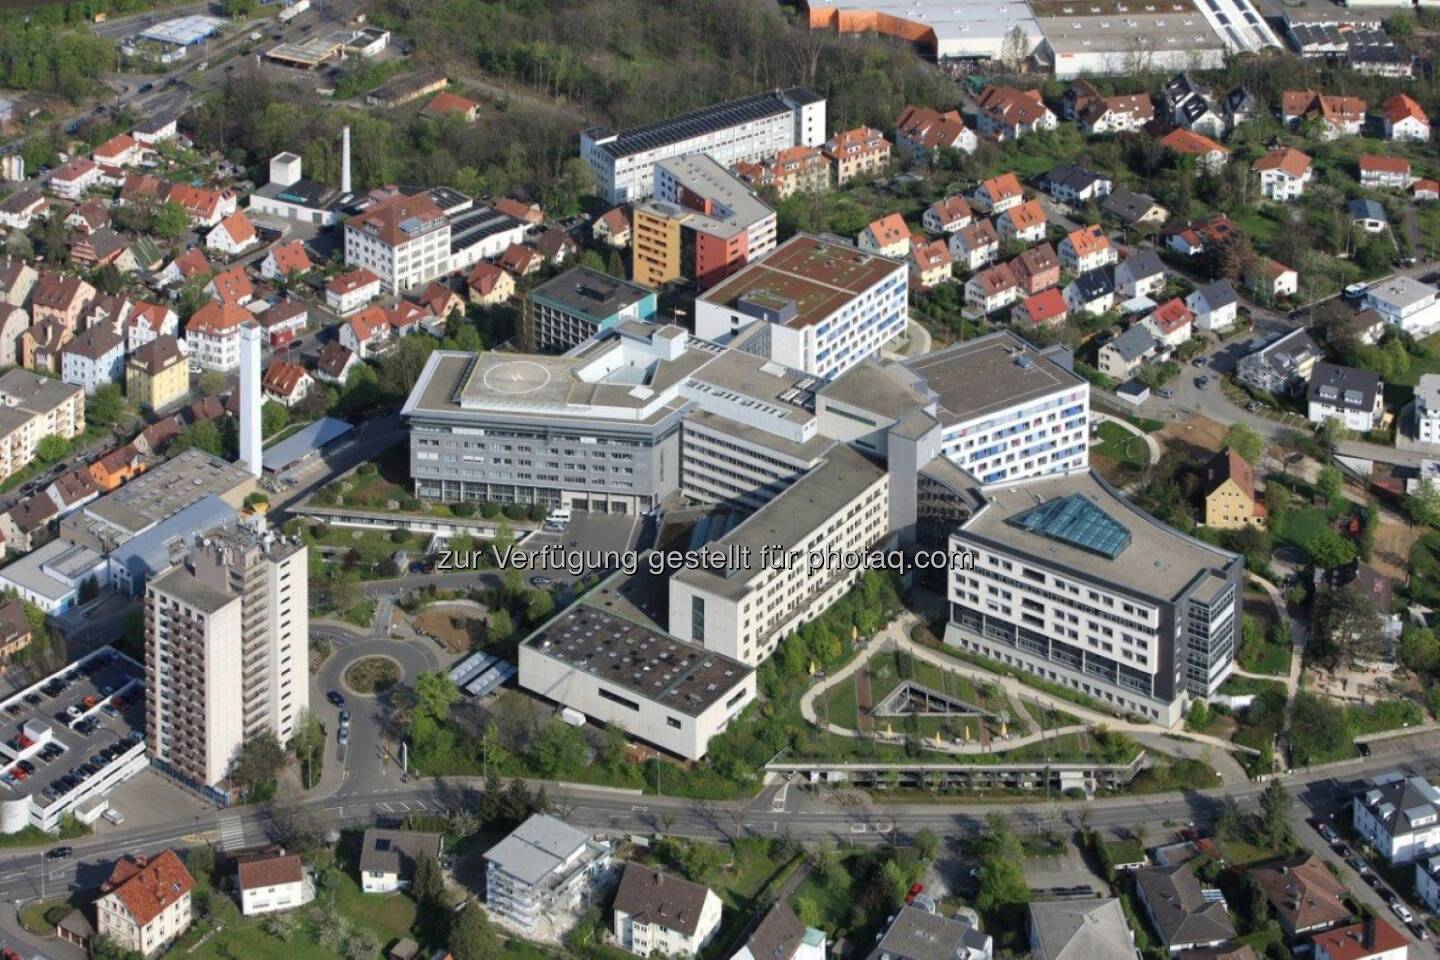 Klinikum am Steinenberg : ClinicAll stattet mit dem Klinikum am Steinenberg in Reutlingen ein weiteres renommiertes Zentralkrankenhaus aus : Fotocredit: ClinicAll